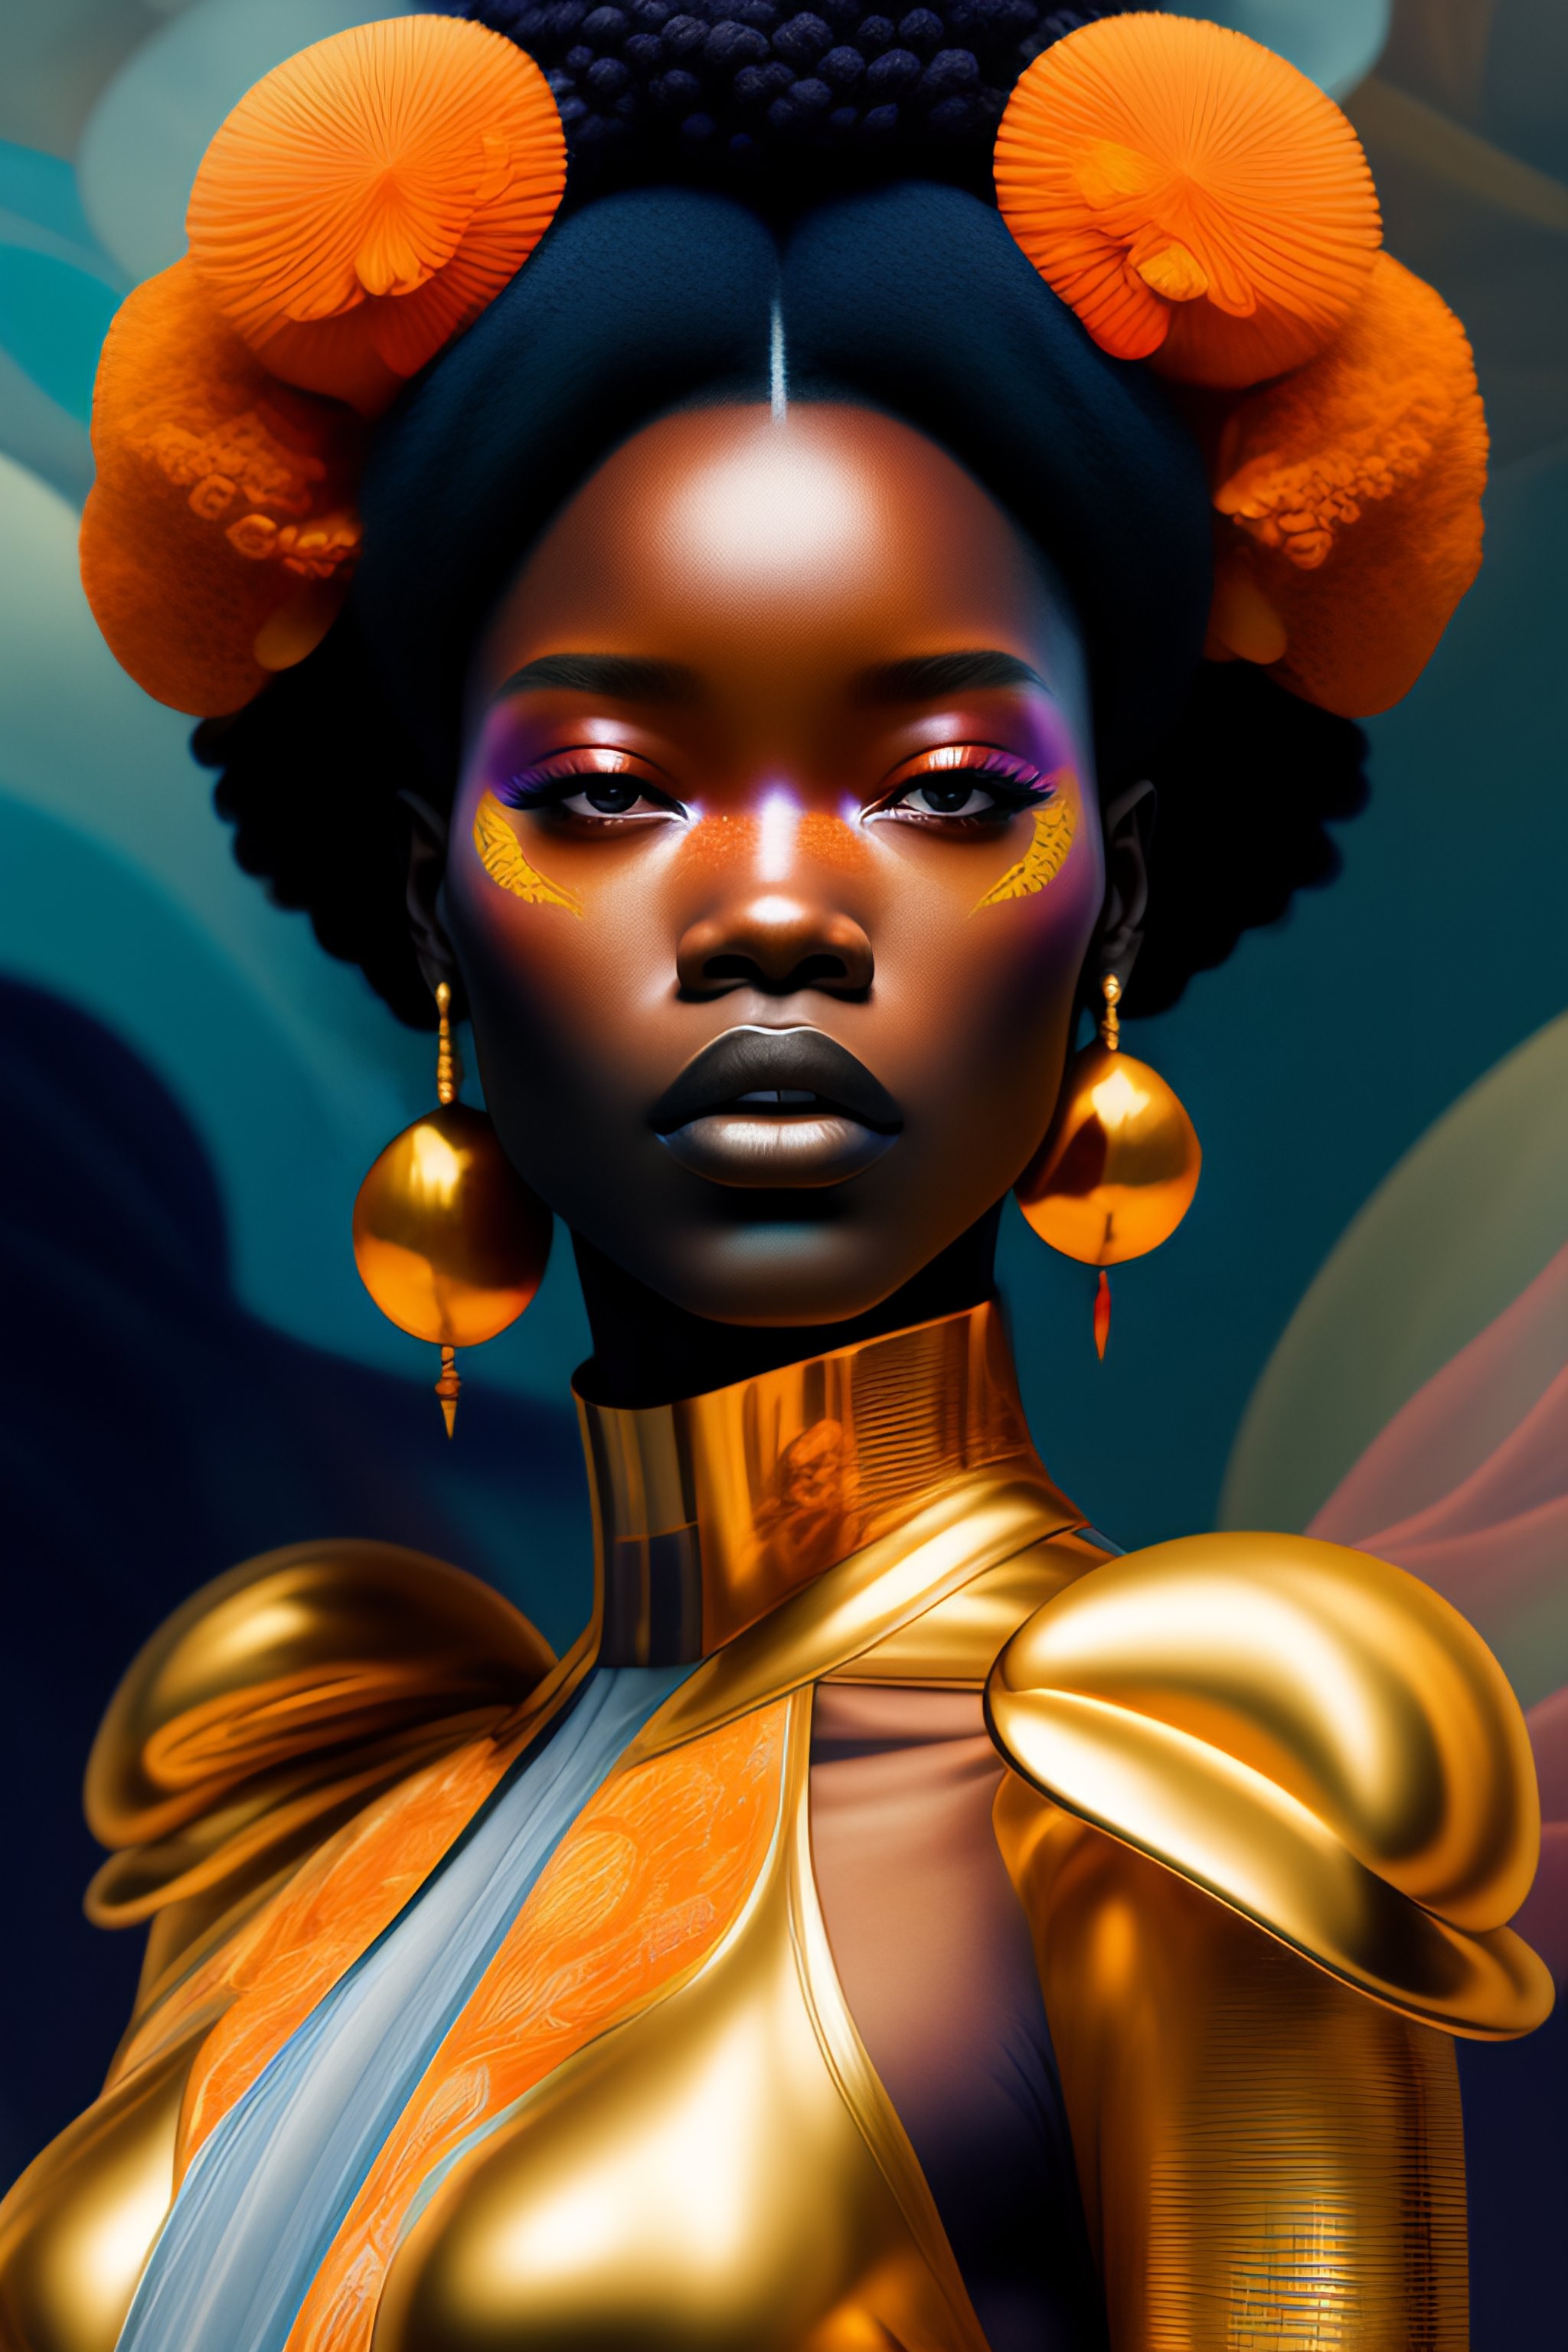 Lexica - Citizen portrait afrofuturism soft light painted by james jean ...